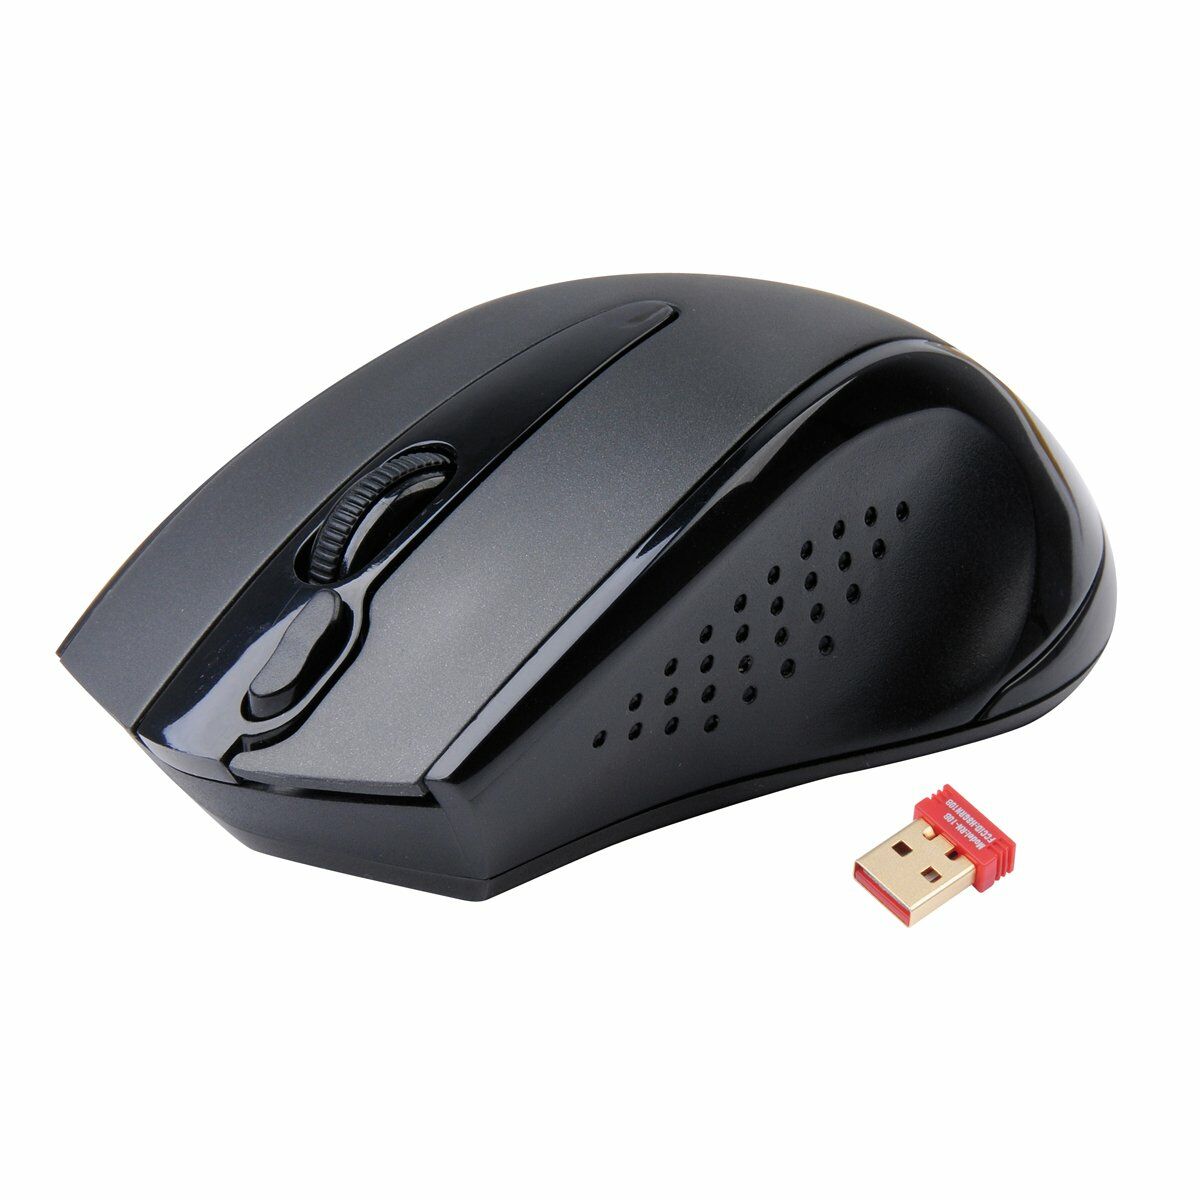 Osta tuote Langaton hiiri A4 Tech G9-500F Musta verkkokaupastamme Korhone: Tietokoneet & Elektroniikka 20% alennuksella koodilla VIIKONLOPPU